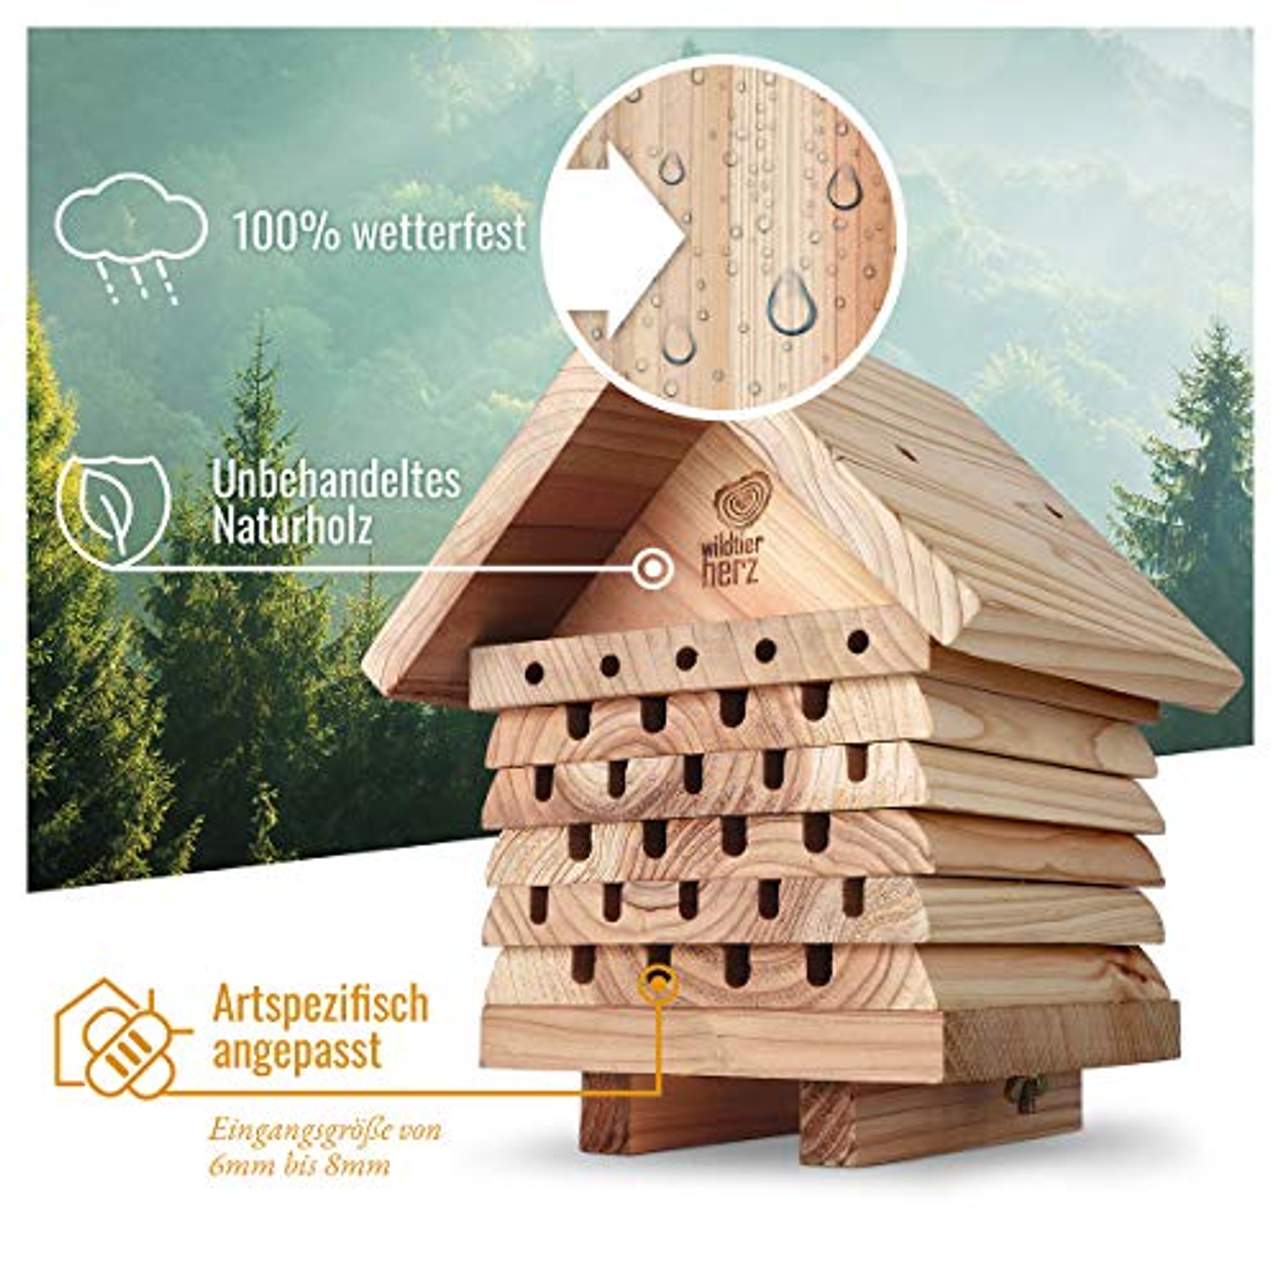 wildtier herz I Bienenhotel schwere Ausführung aus verschraubtem Massiv-Holz